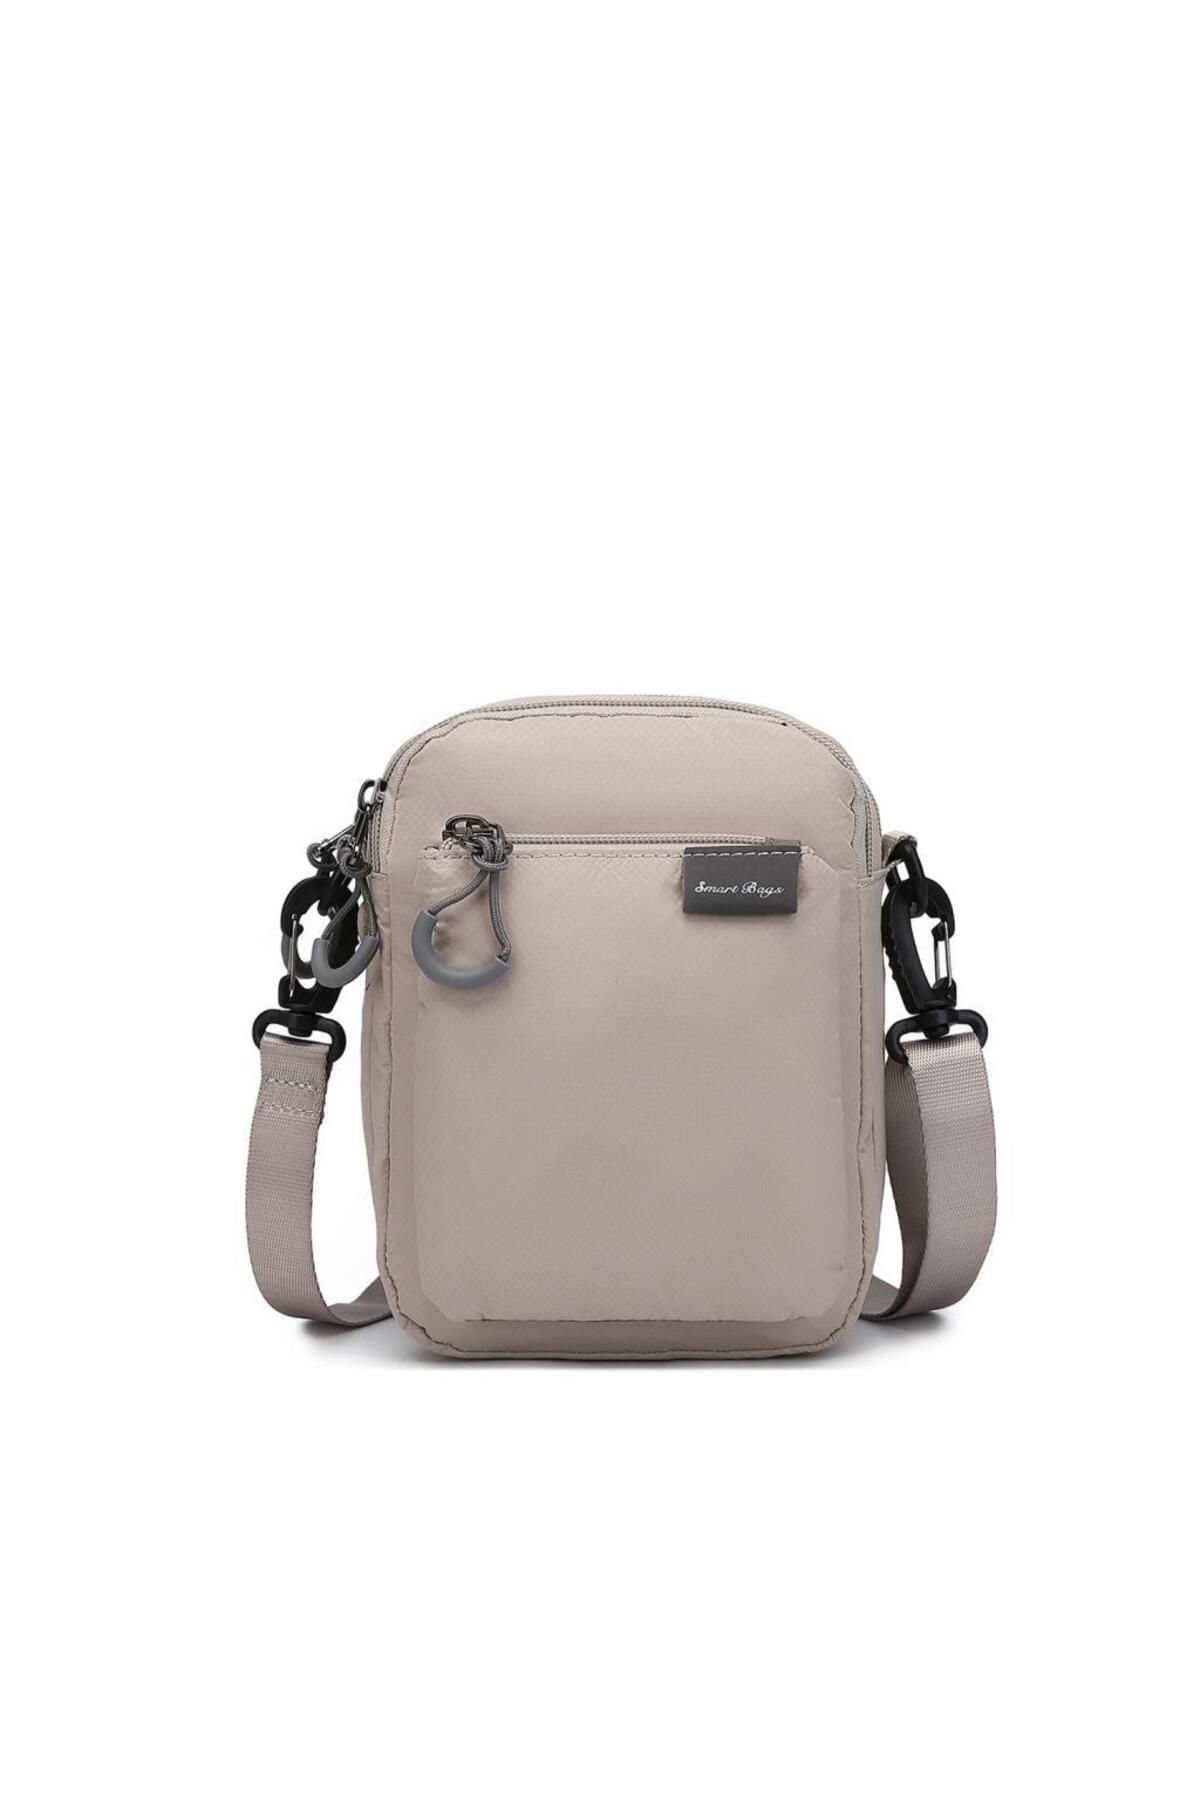 Smart Bags Mini Boy Ekstra Hafif Uniseks Postacı Çantası 3147